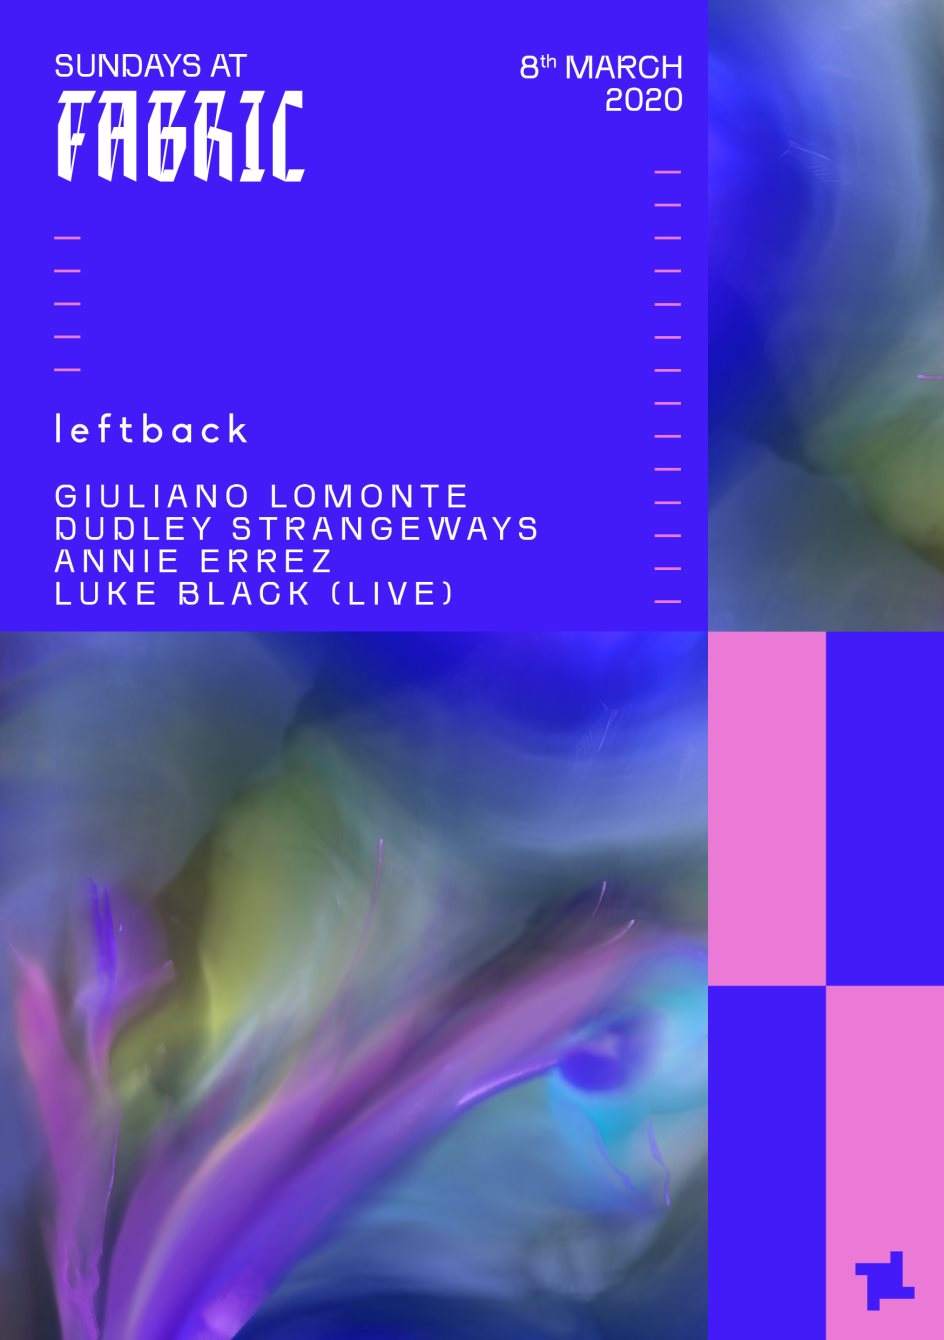 Sundays at fabric: Leftback with Giuliano Lomonte - Página trasera